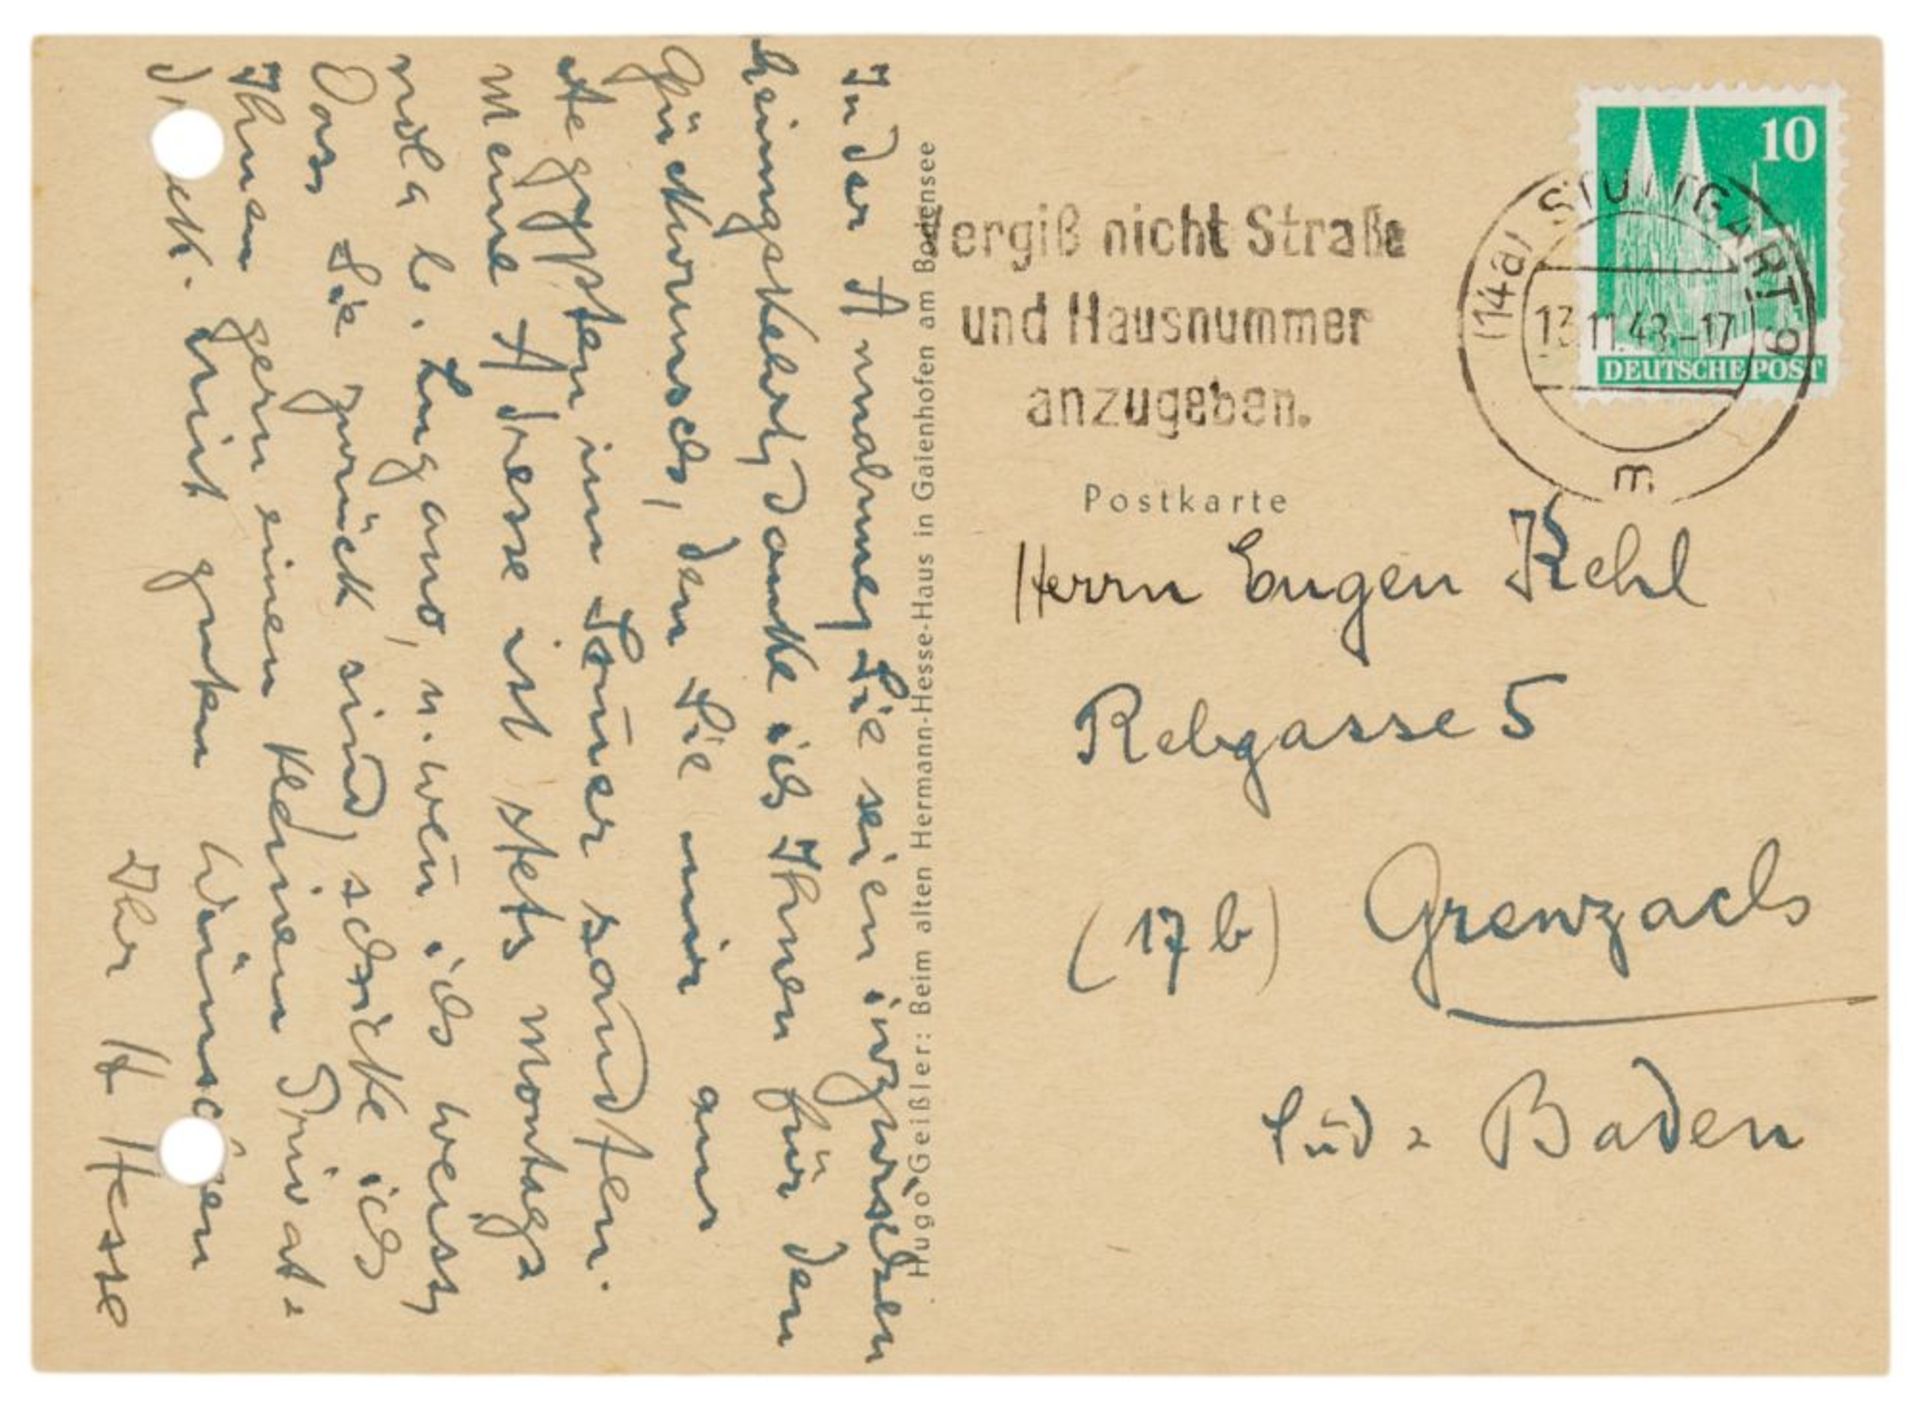 Nobelpreisträger - - Hesse, Hermann. Postkarte mit eigenhändigem 9-zeiligen Text und Unterschrift an